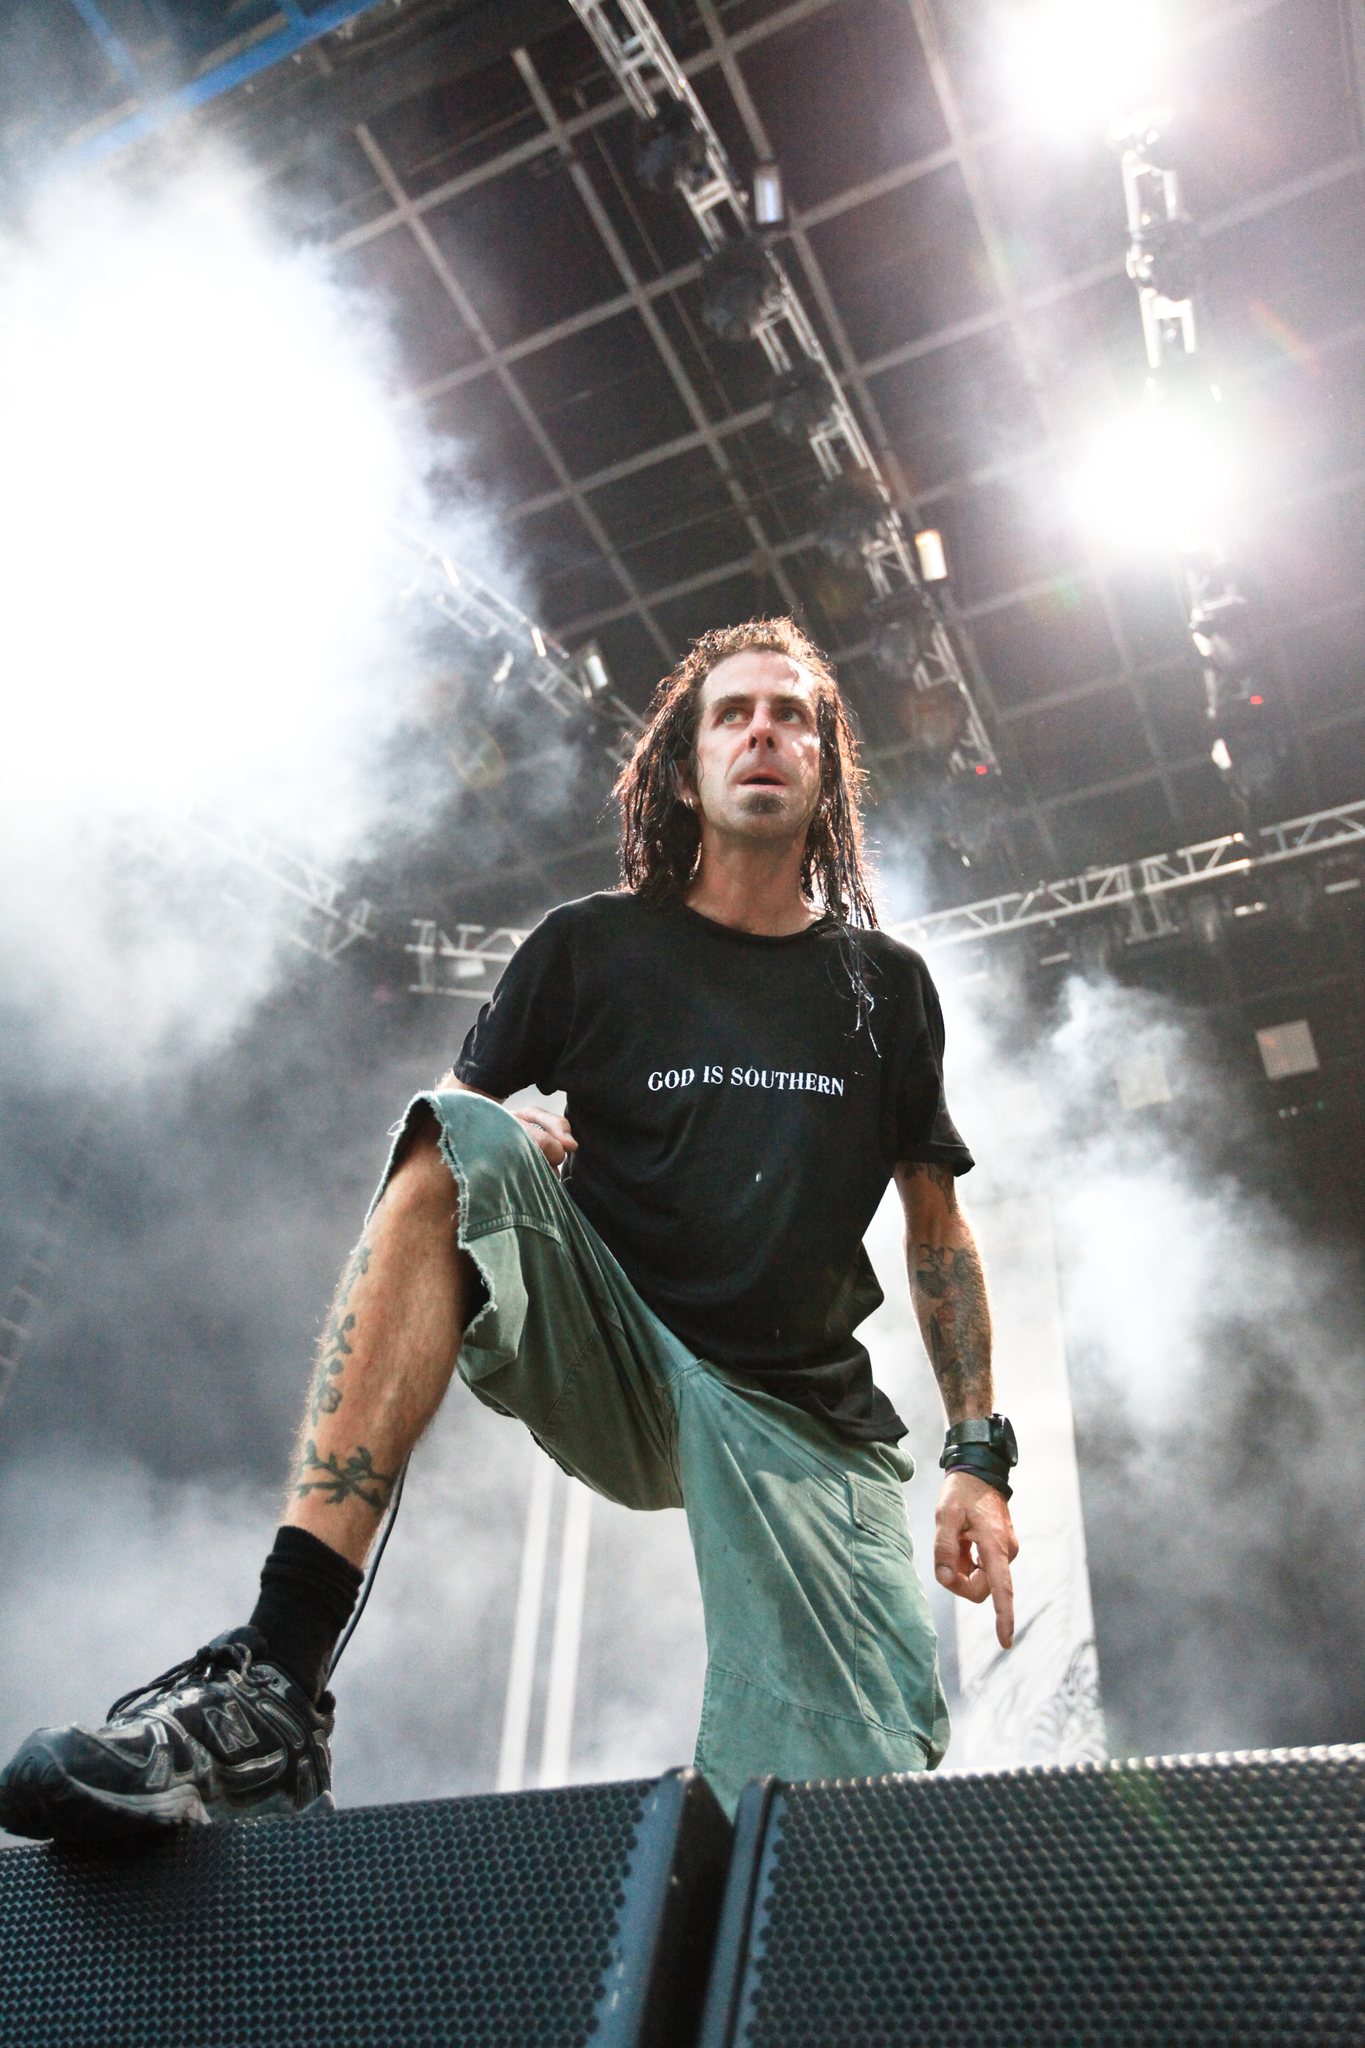 Vocalist Randy Blythe of Lamb of God performs at the 2010 Rockstar Energy Drink Mayhem Festival at San Manuel Amphitheater in San Bernardino, California.